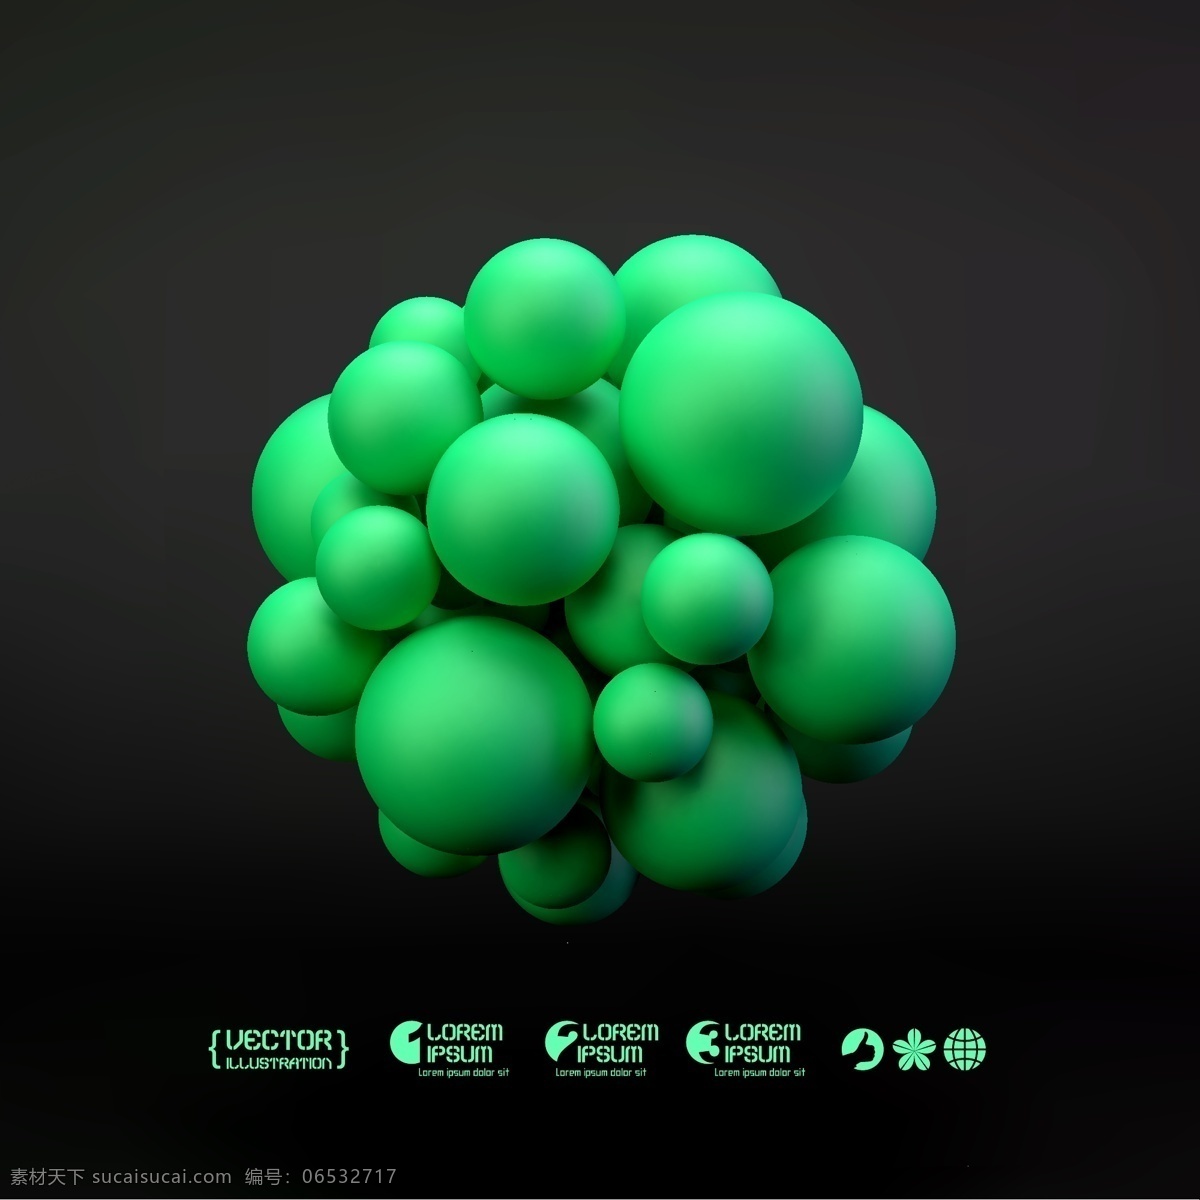 绿色 圆球 组成 立体 图案 立体图案 3d 图标 生活百科 矢量素材 黑色